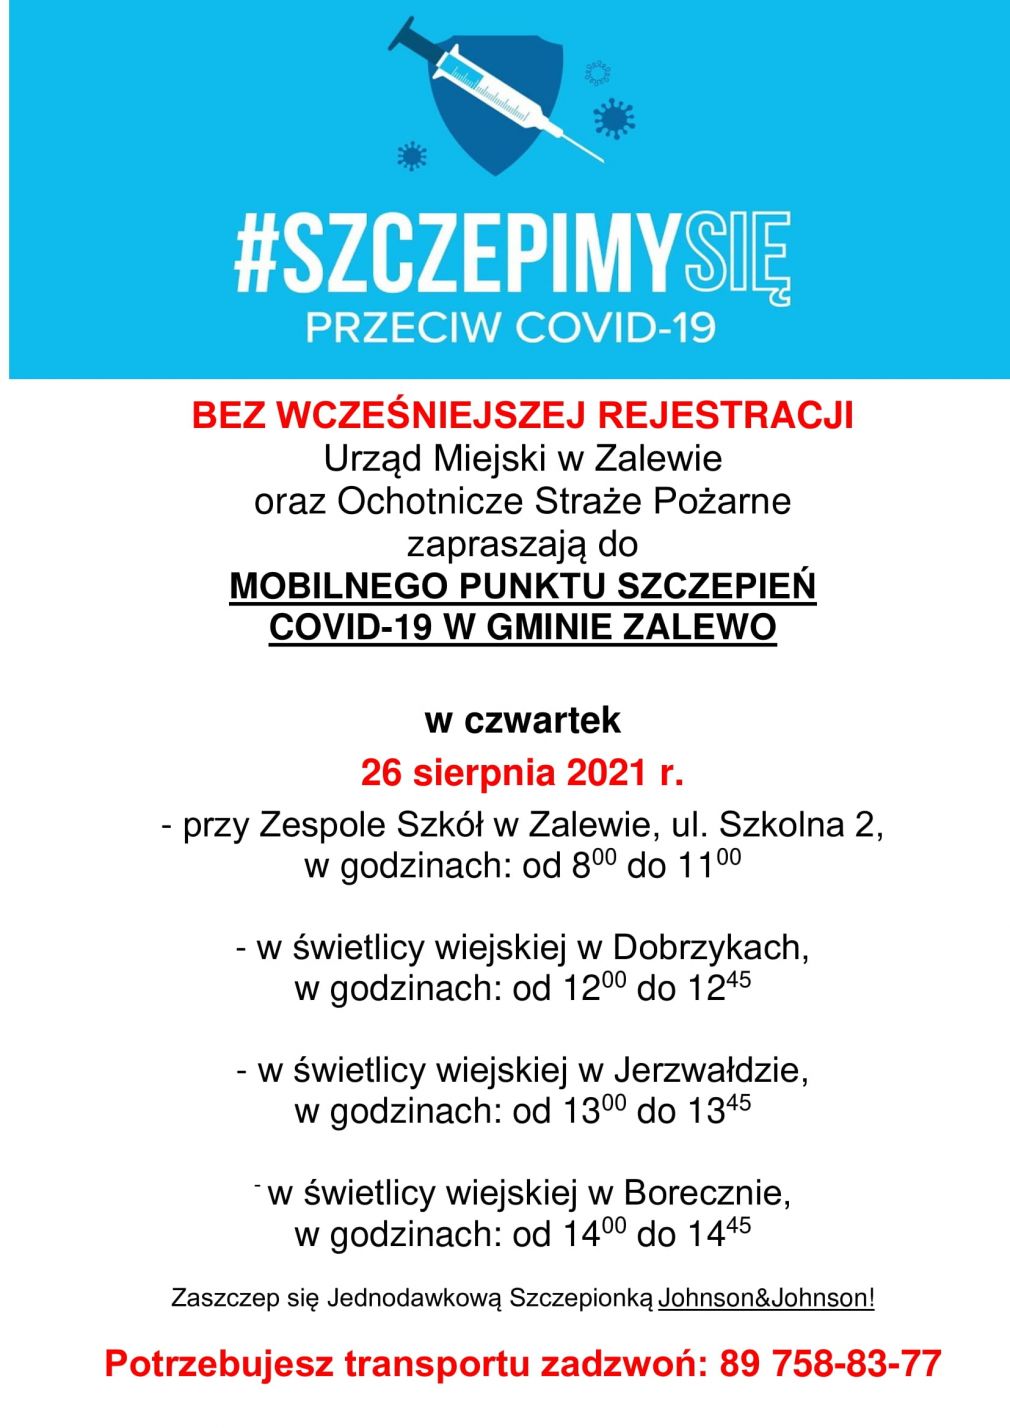 Zaproszenie do Mobilnego Punktu Szczepień w Zalewie, Dobrzykach, Jerzwałdzie i Borecznie